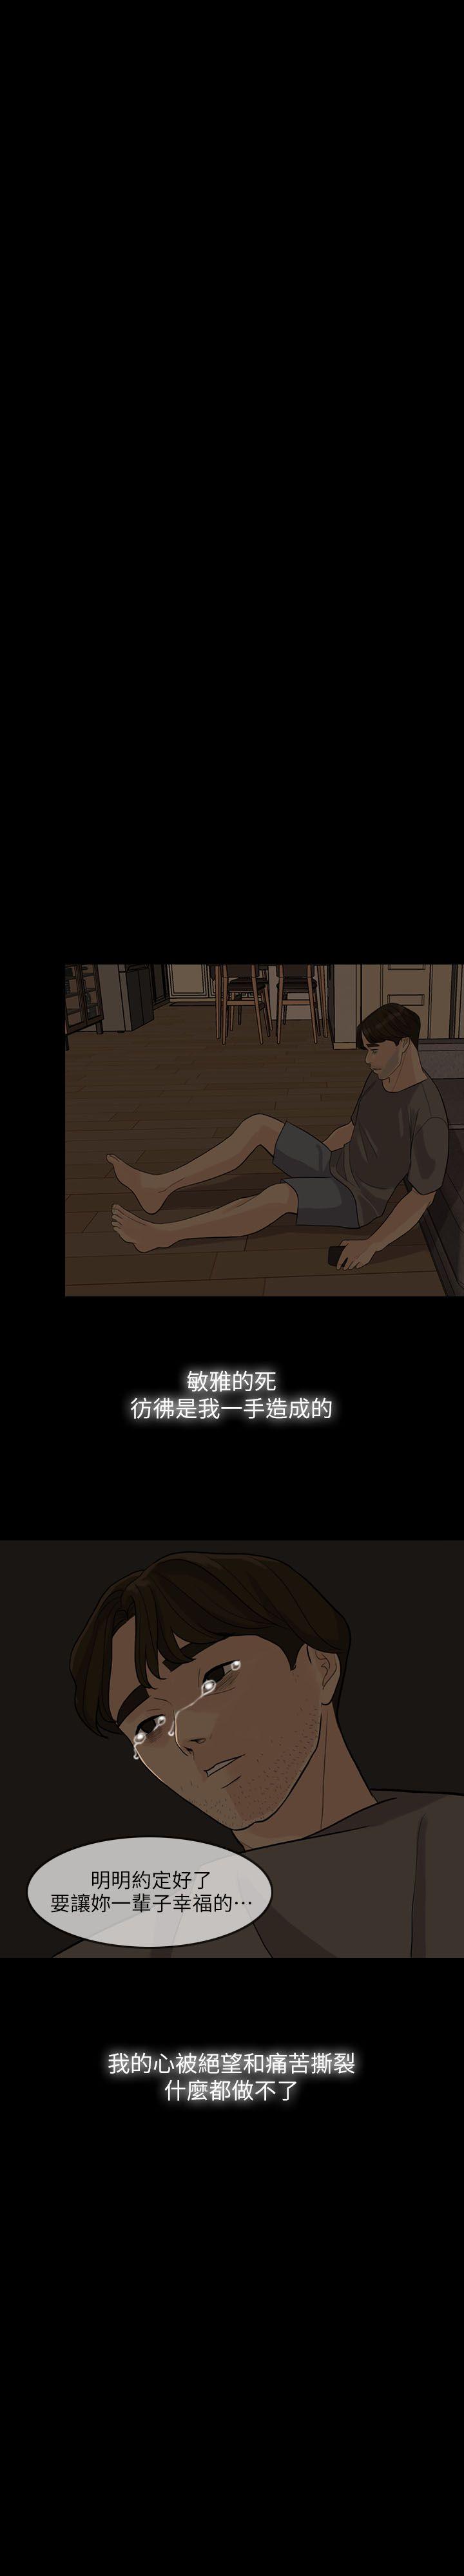 韩国污漫画 失控的愛 第3话 2